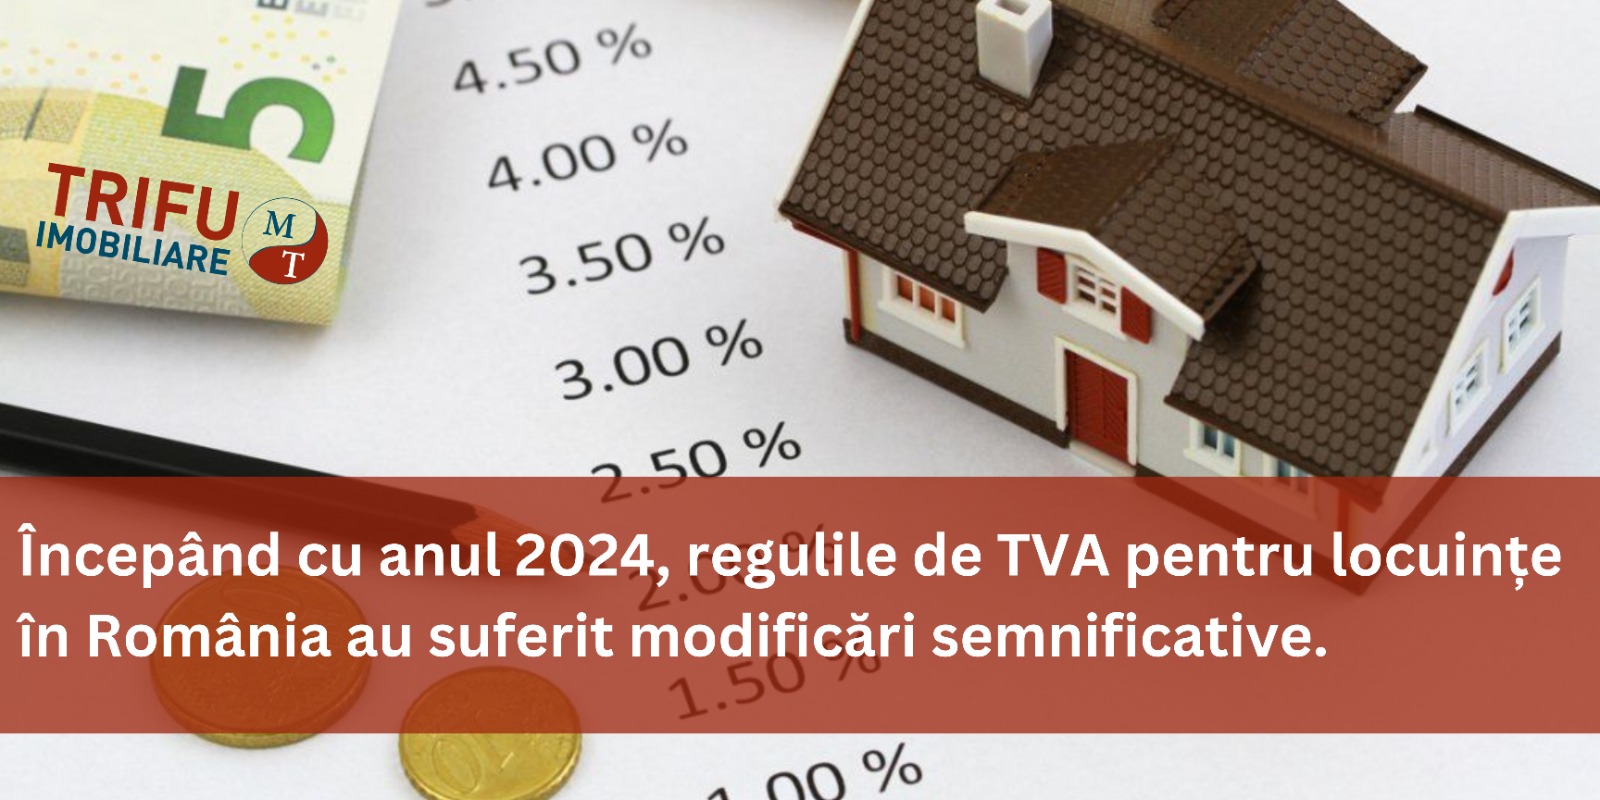 Regulile de TVA pentru locuinte au suferit modificari semnificative